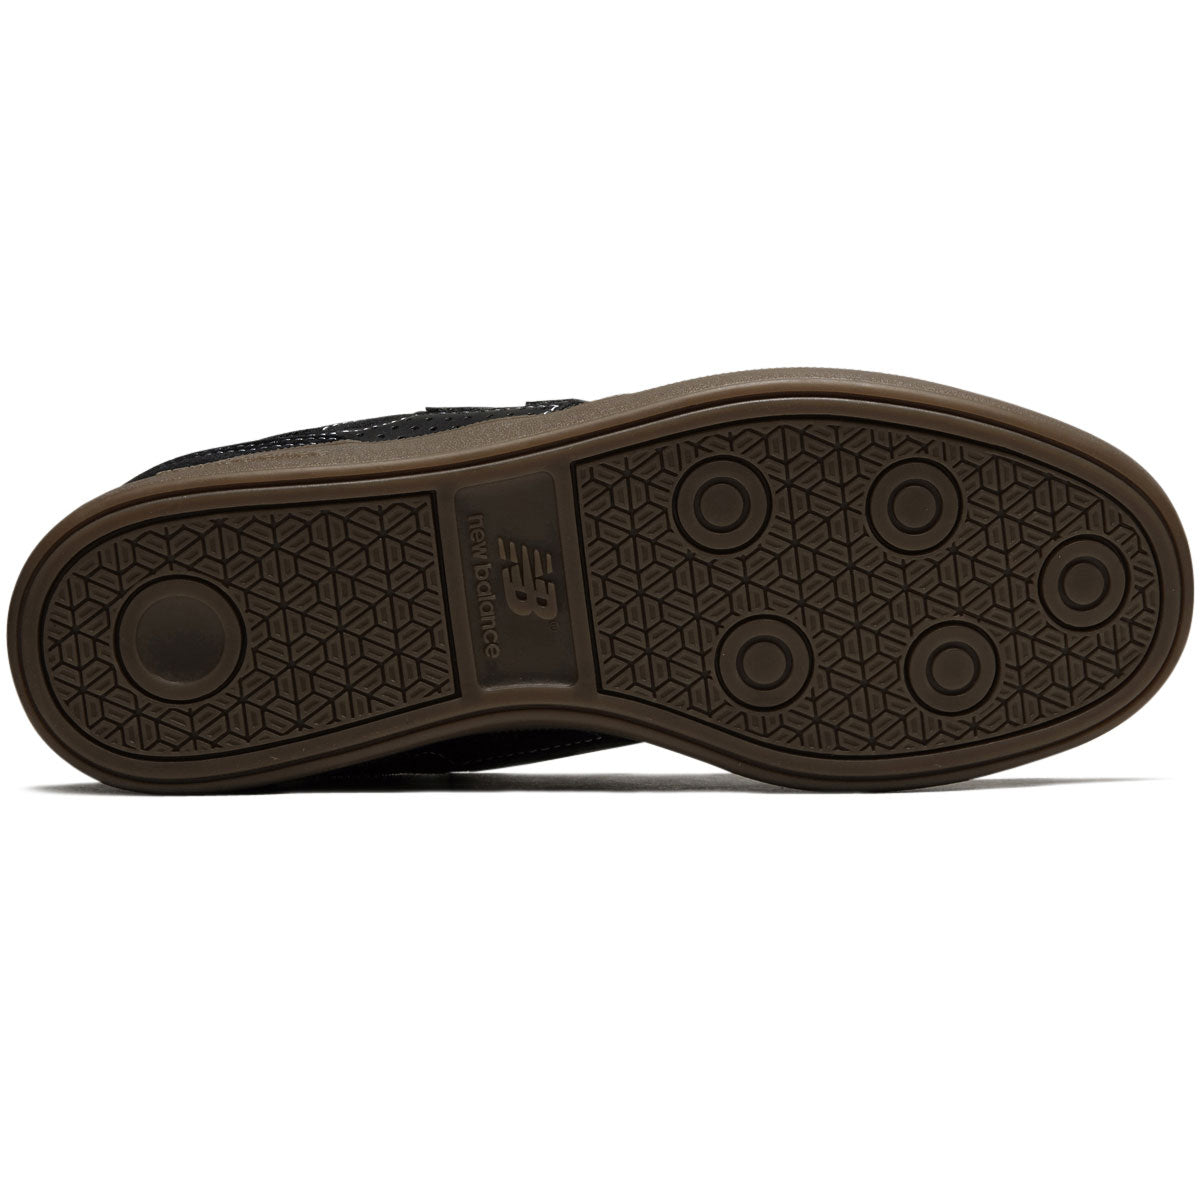 New Balance 508 Westgate Shoes - Black/Gum/White image 4